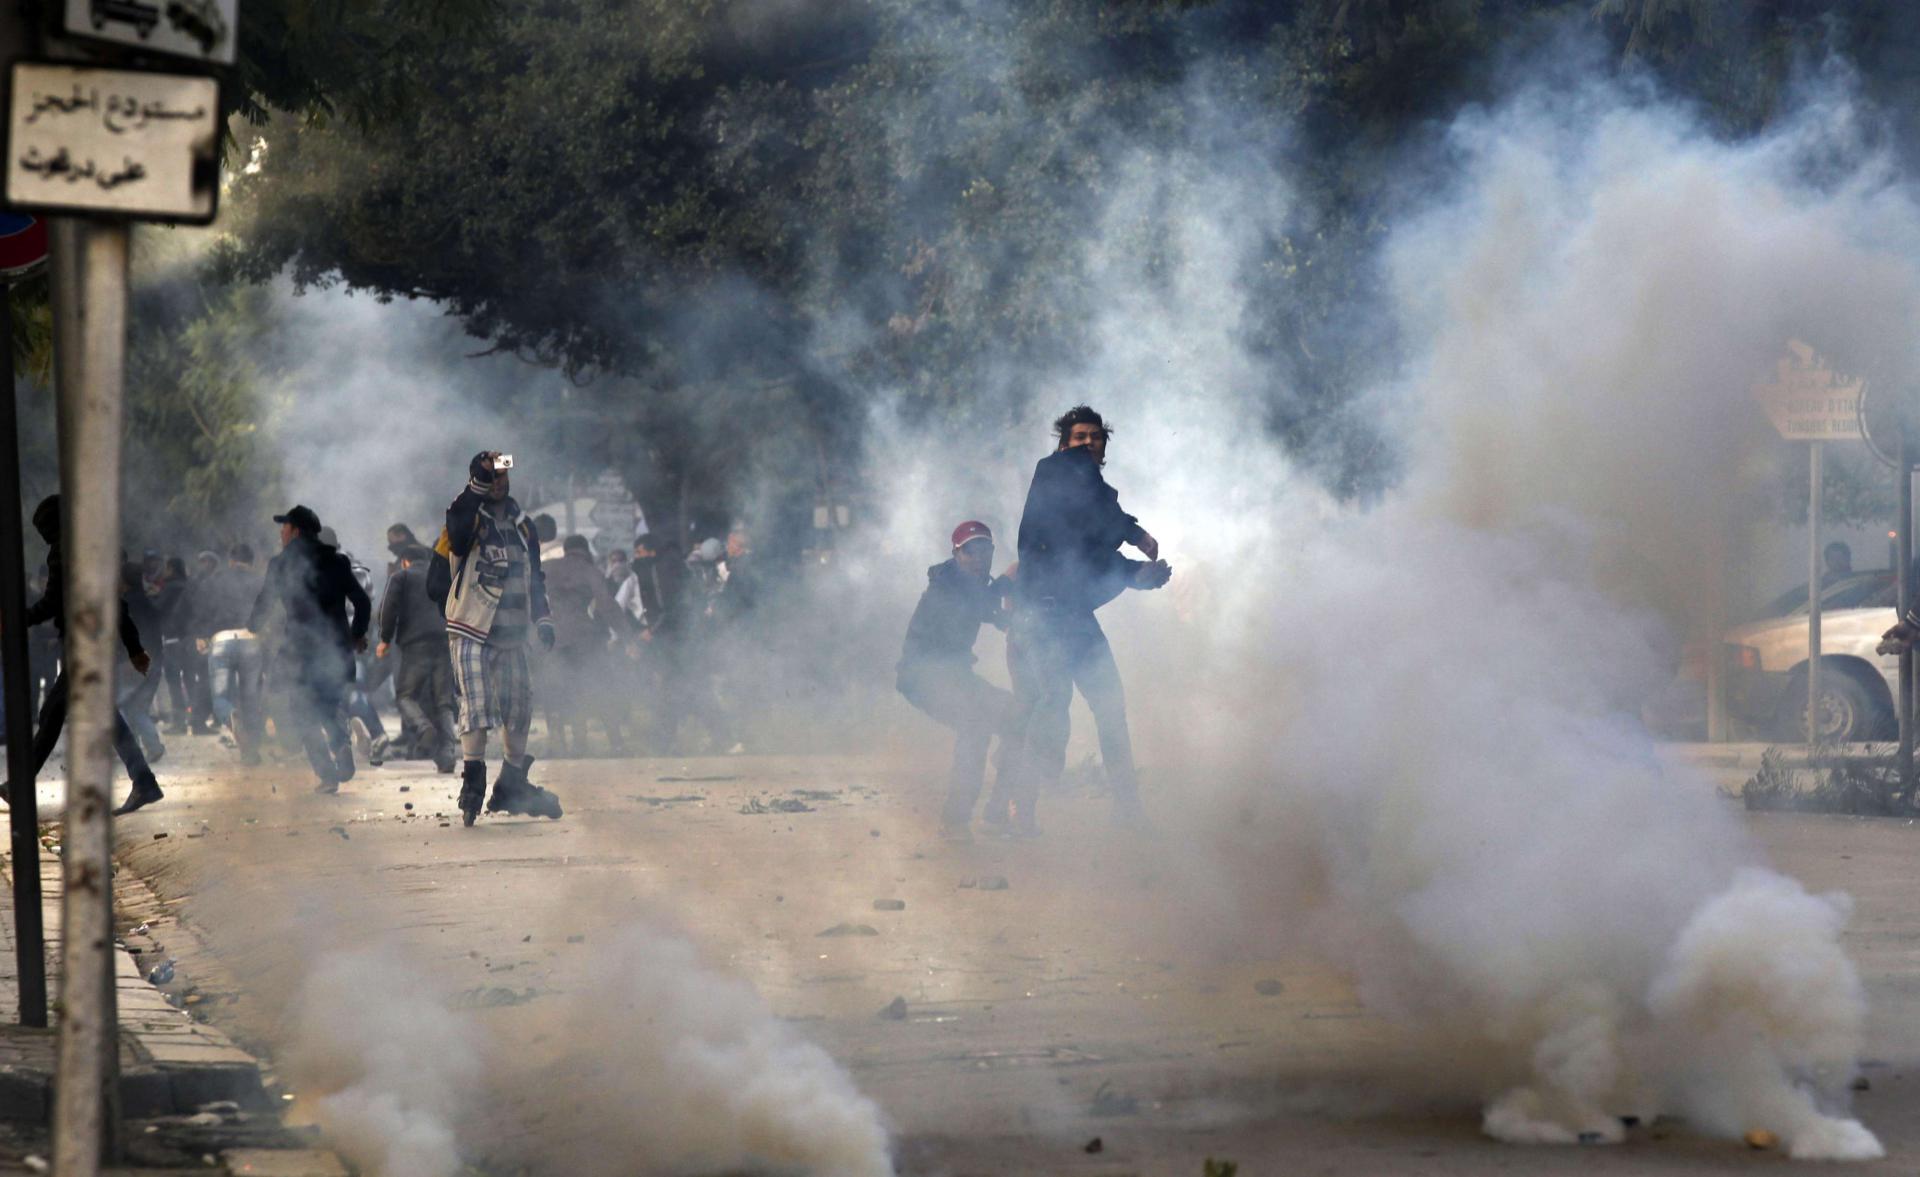 اشتباكات بين الشرطة والمتظاهرين خلال الاحتاجاجات التونسية